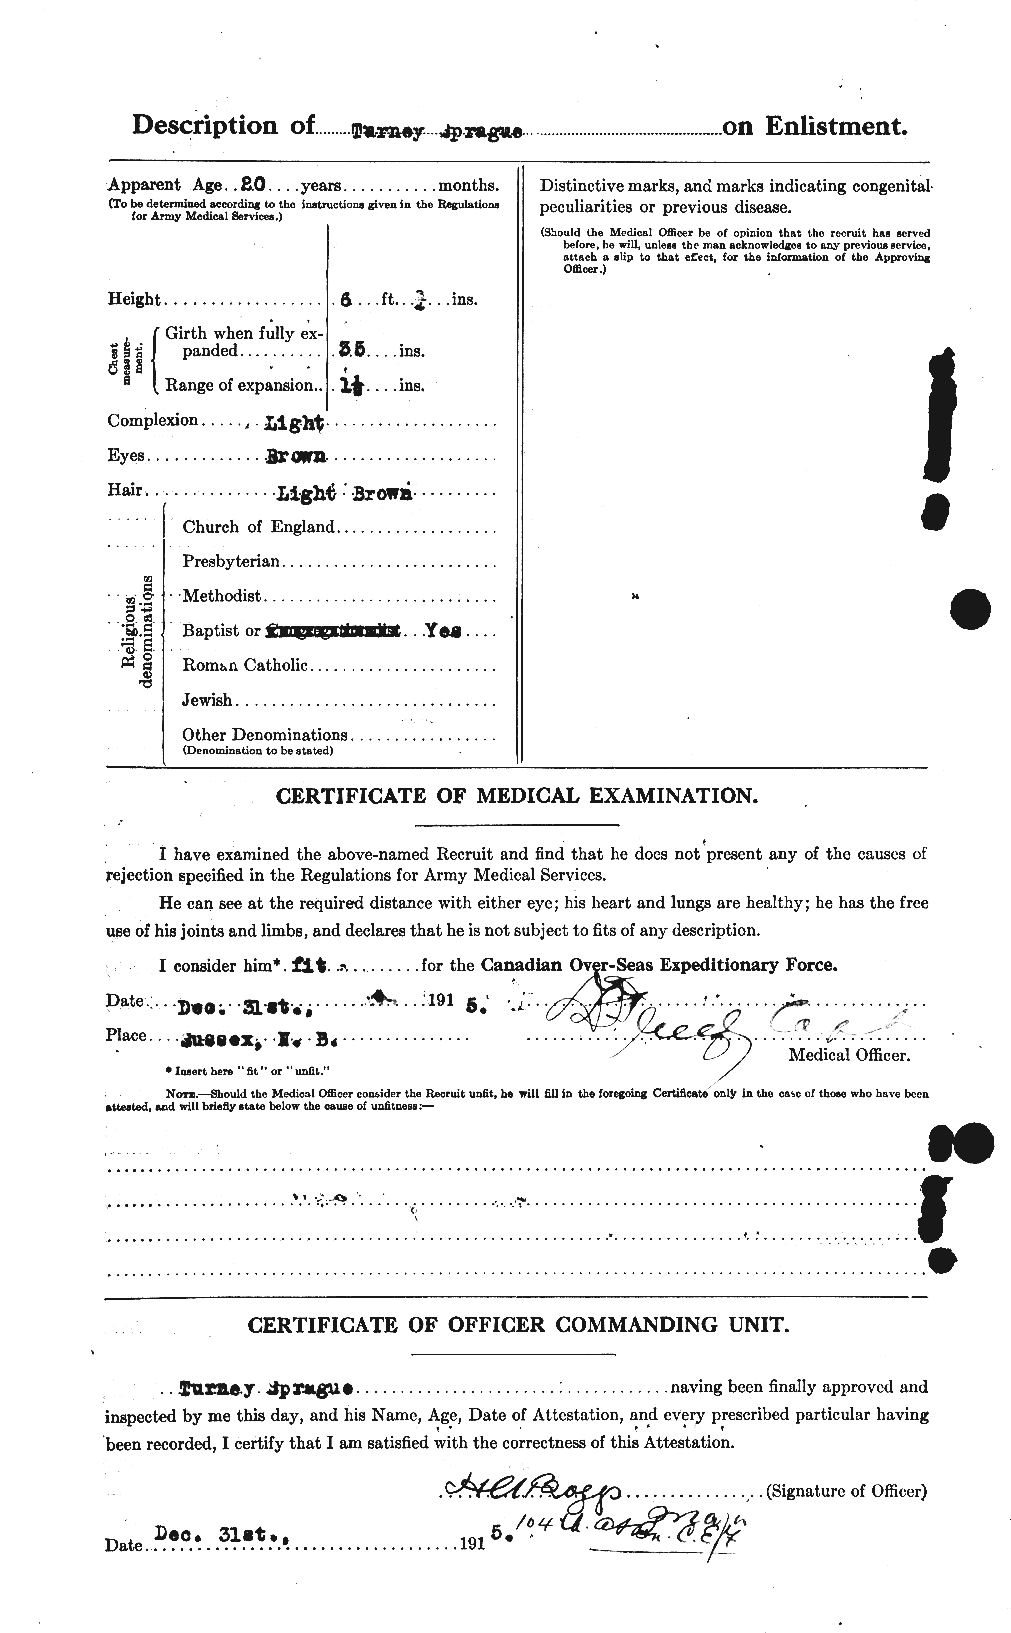 Dossiers du Personnel de la Première Guerre mondiale - CEC 112524b